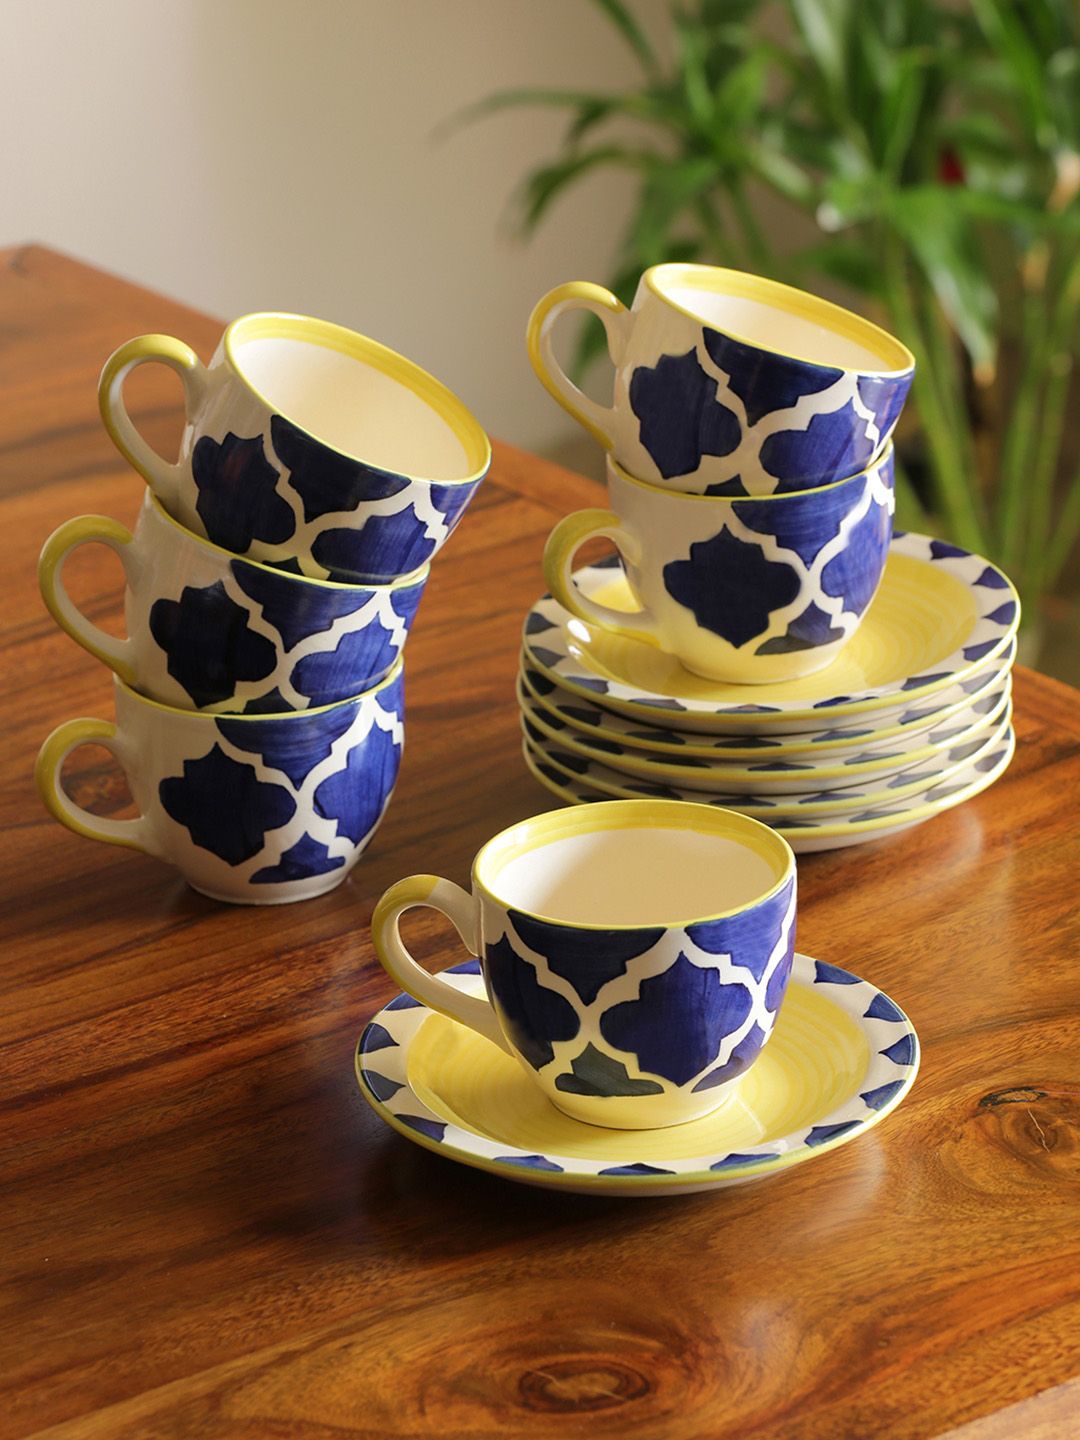 ExclusiveLane Set of 6 Blue Mediterranean High-Tea Handpainted Ceramic Cups & Saucers Price in India